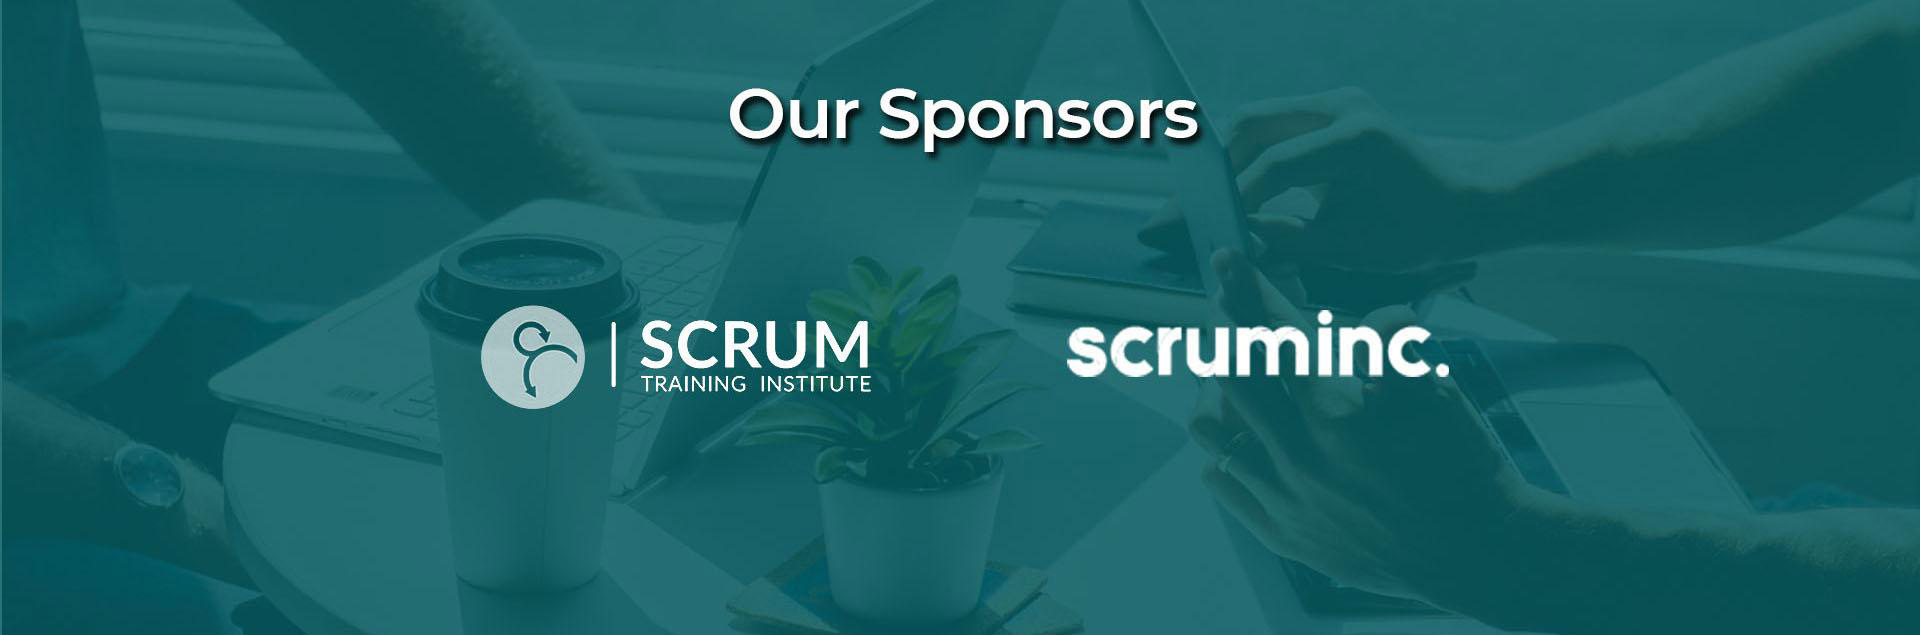 Our Sponsons Scrum Training Institute, Scrum Inc